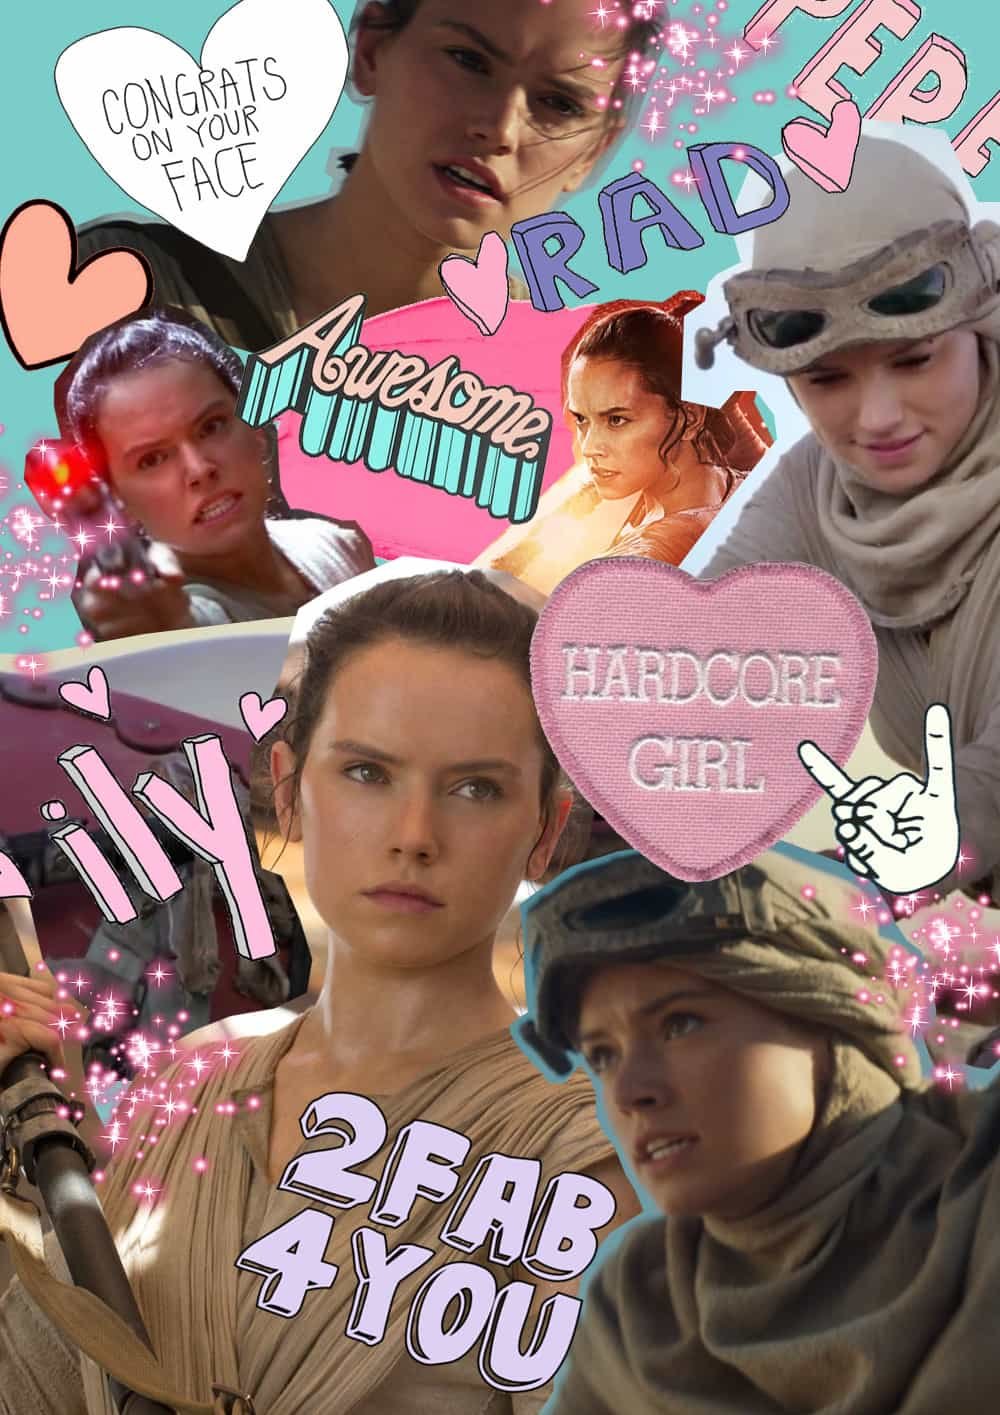 Rey Star Wars Collage, Hay una lesbiana en mi sopa